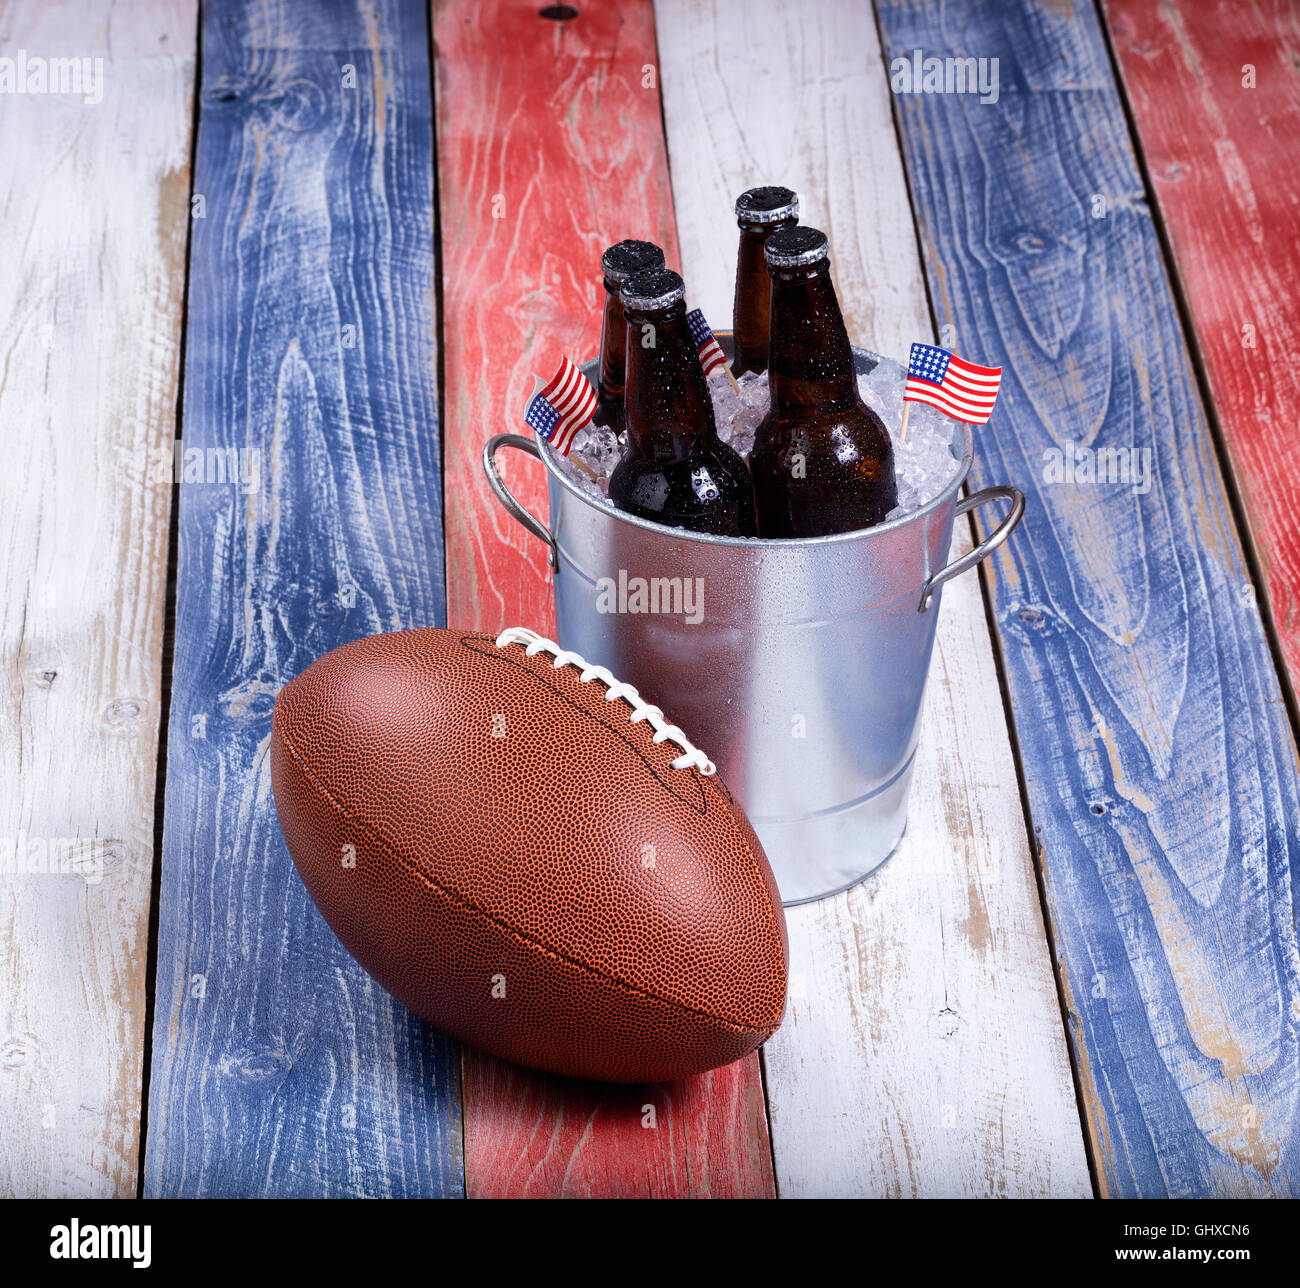 Draufsicht des American Football und Eimer eiskaltes Bier auf rustikalen Holztafeln gemalt in USA Nationalfarben. Stockfoto